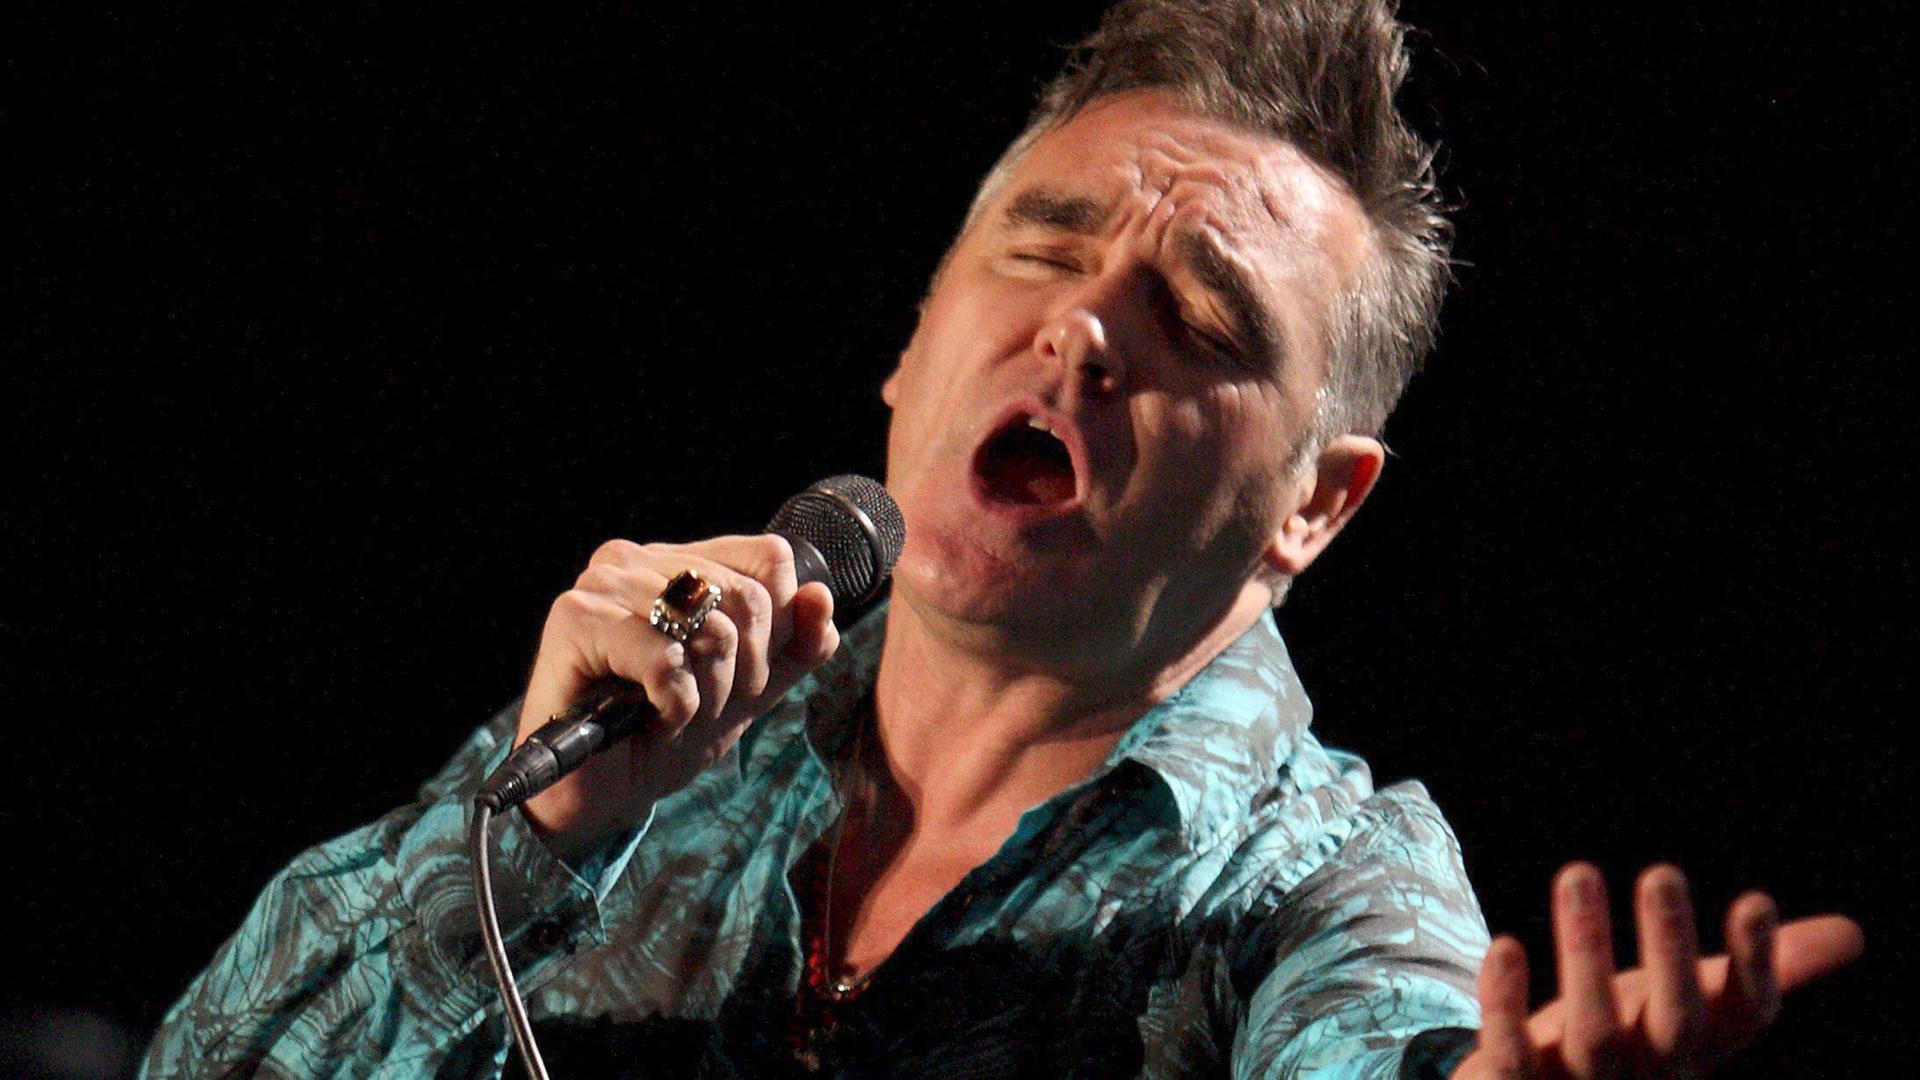 Der Sänger Morrissey präsentiert mit großen Gesten seine Songs.